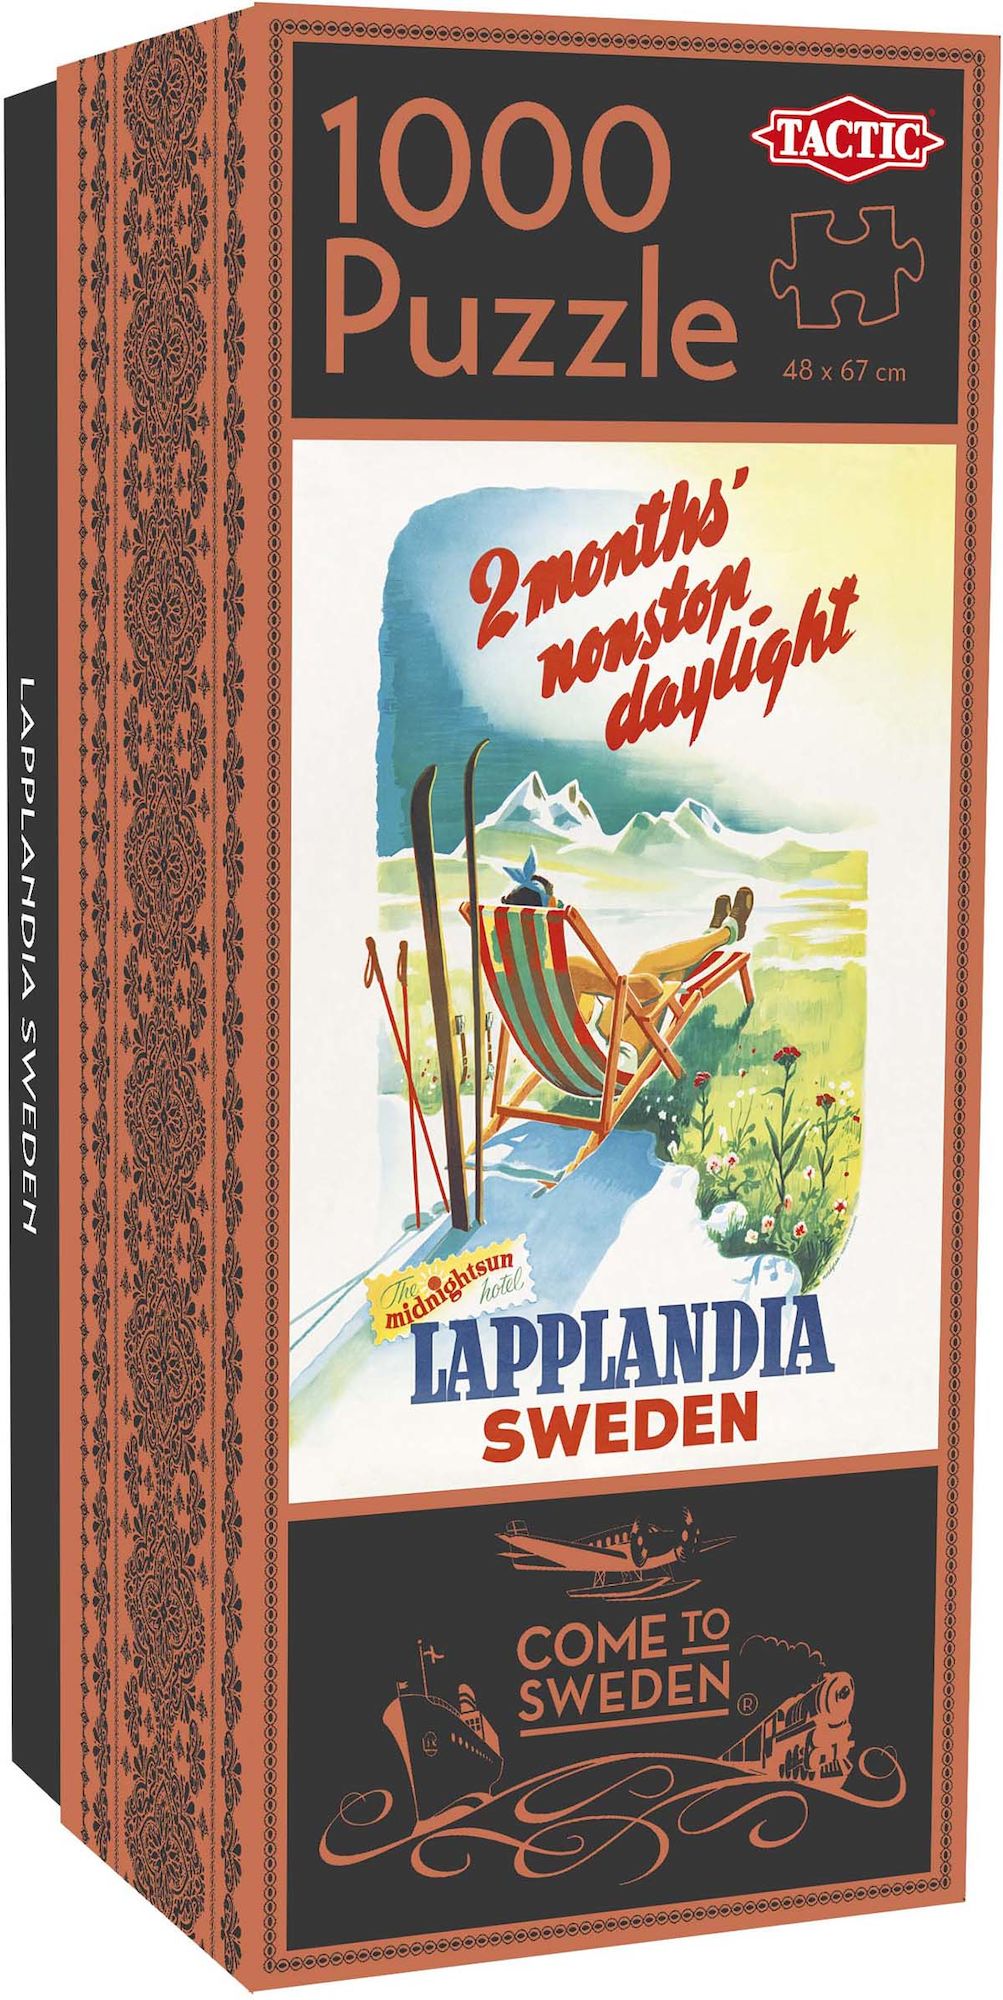 Tactic Pussel Come to Sweden: Lapplandia Sweden 1000 bitar